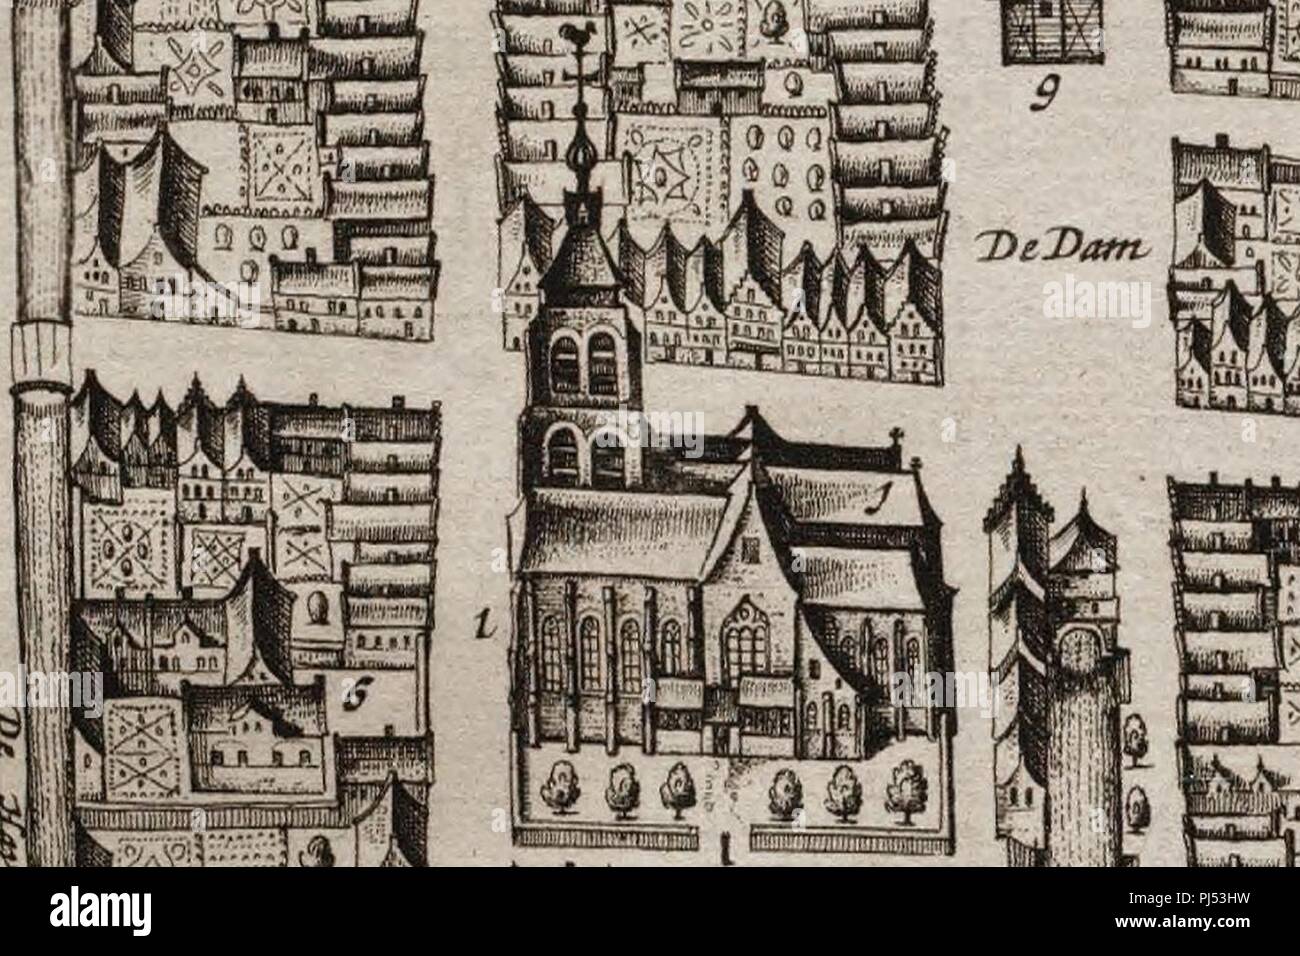 Bartholomeuskerk en weeshuis in Schoonhoven kaart Blaeu 1649. Stock Photo